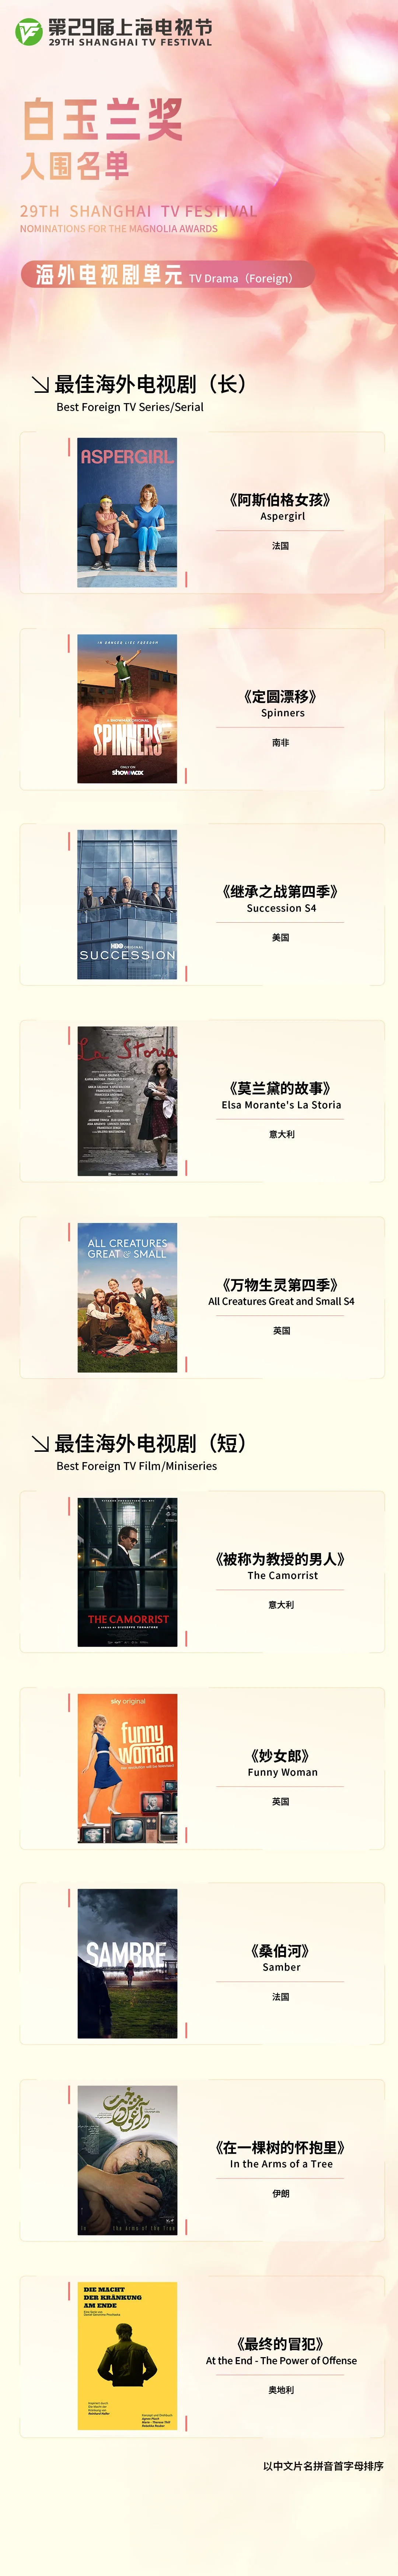 第29届上海电视节白玉兰奖入围名单公布